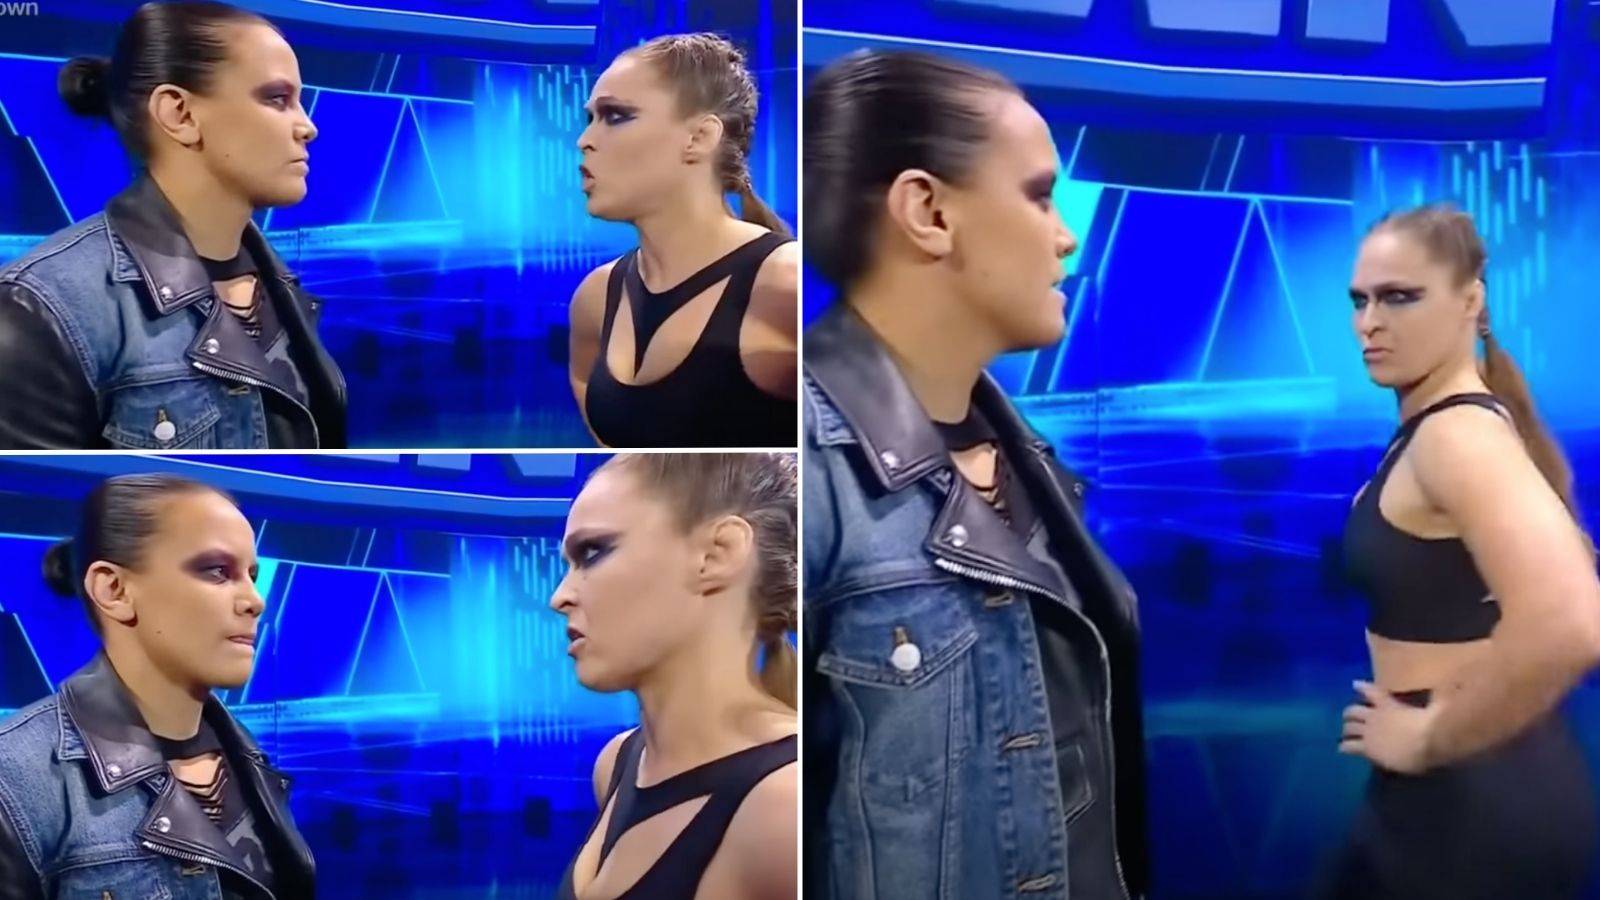 Ronda Rousey confront Shayna Baszler